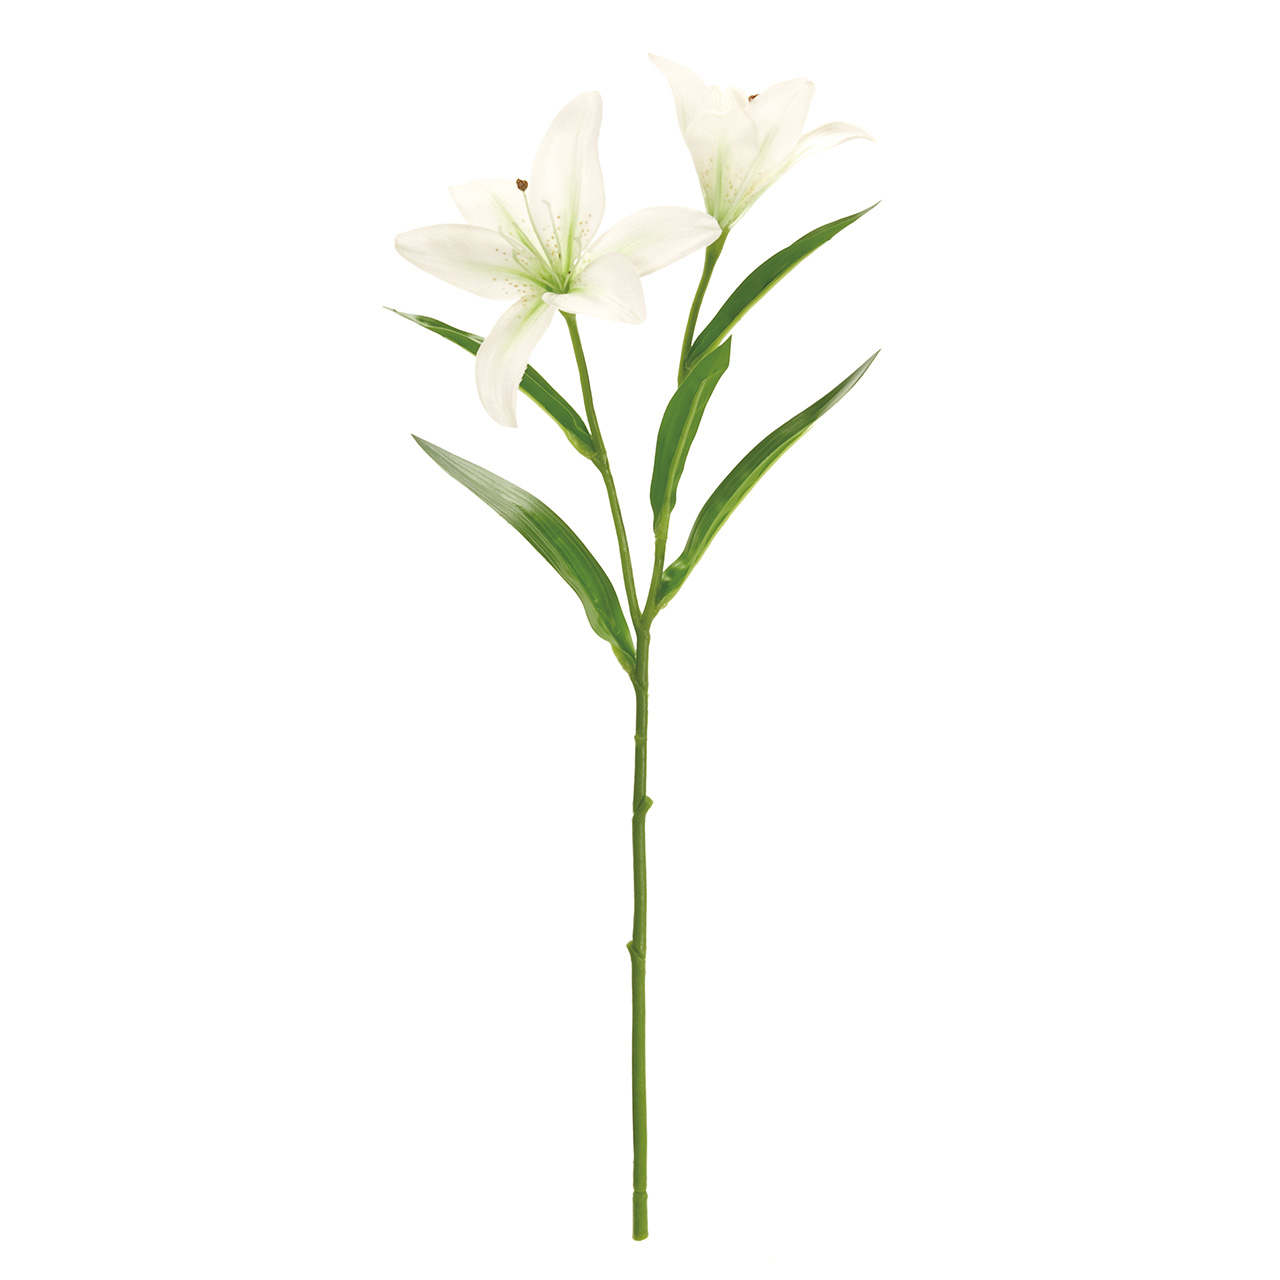 マイフラ 通販 Magiq ステラリリー ホワイトグリーン アーティフィシャルフラワー 造花 Fm 001 ユリ ホワイトグリーン Magiq アーティフィシャルフラワー 造花 全国にmagiq 花器 花資材などをお届けします